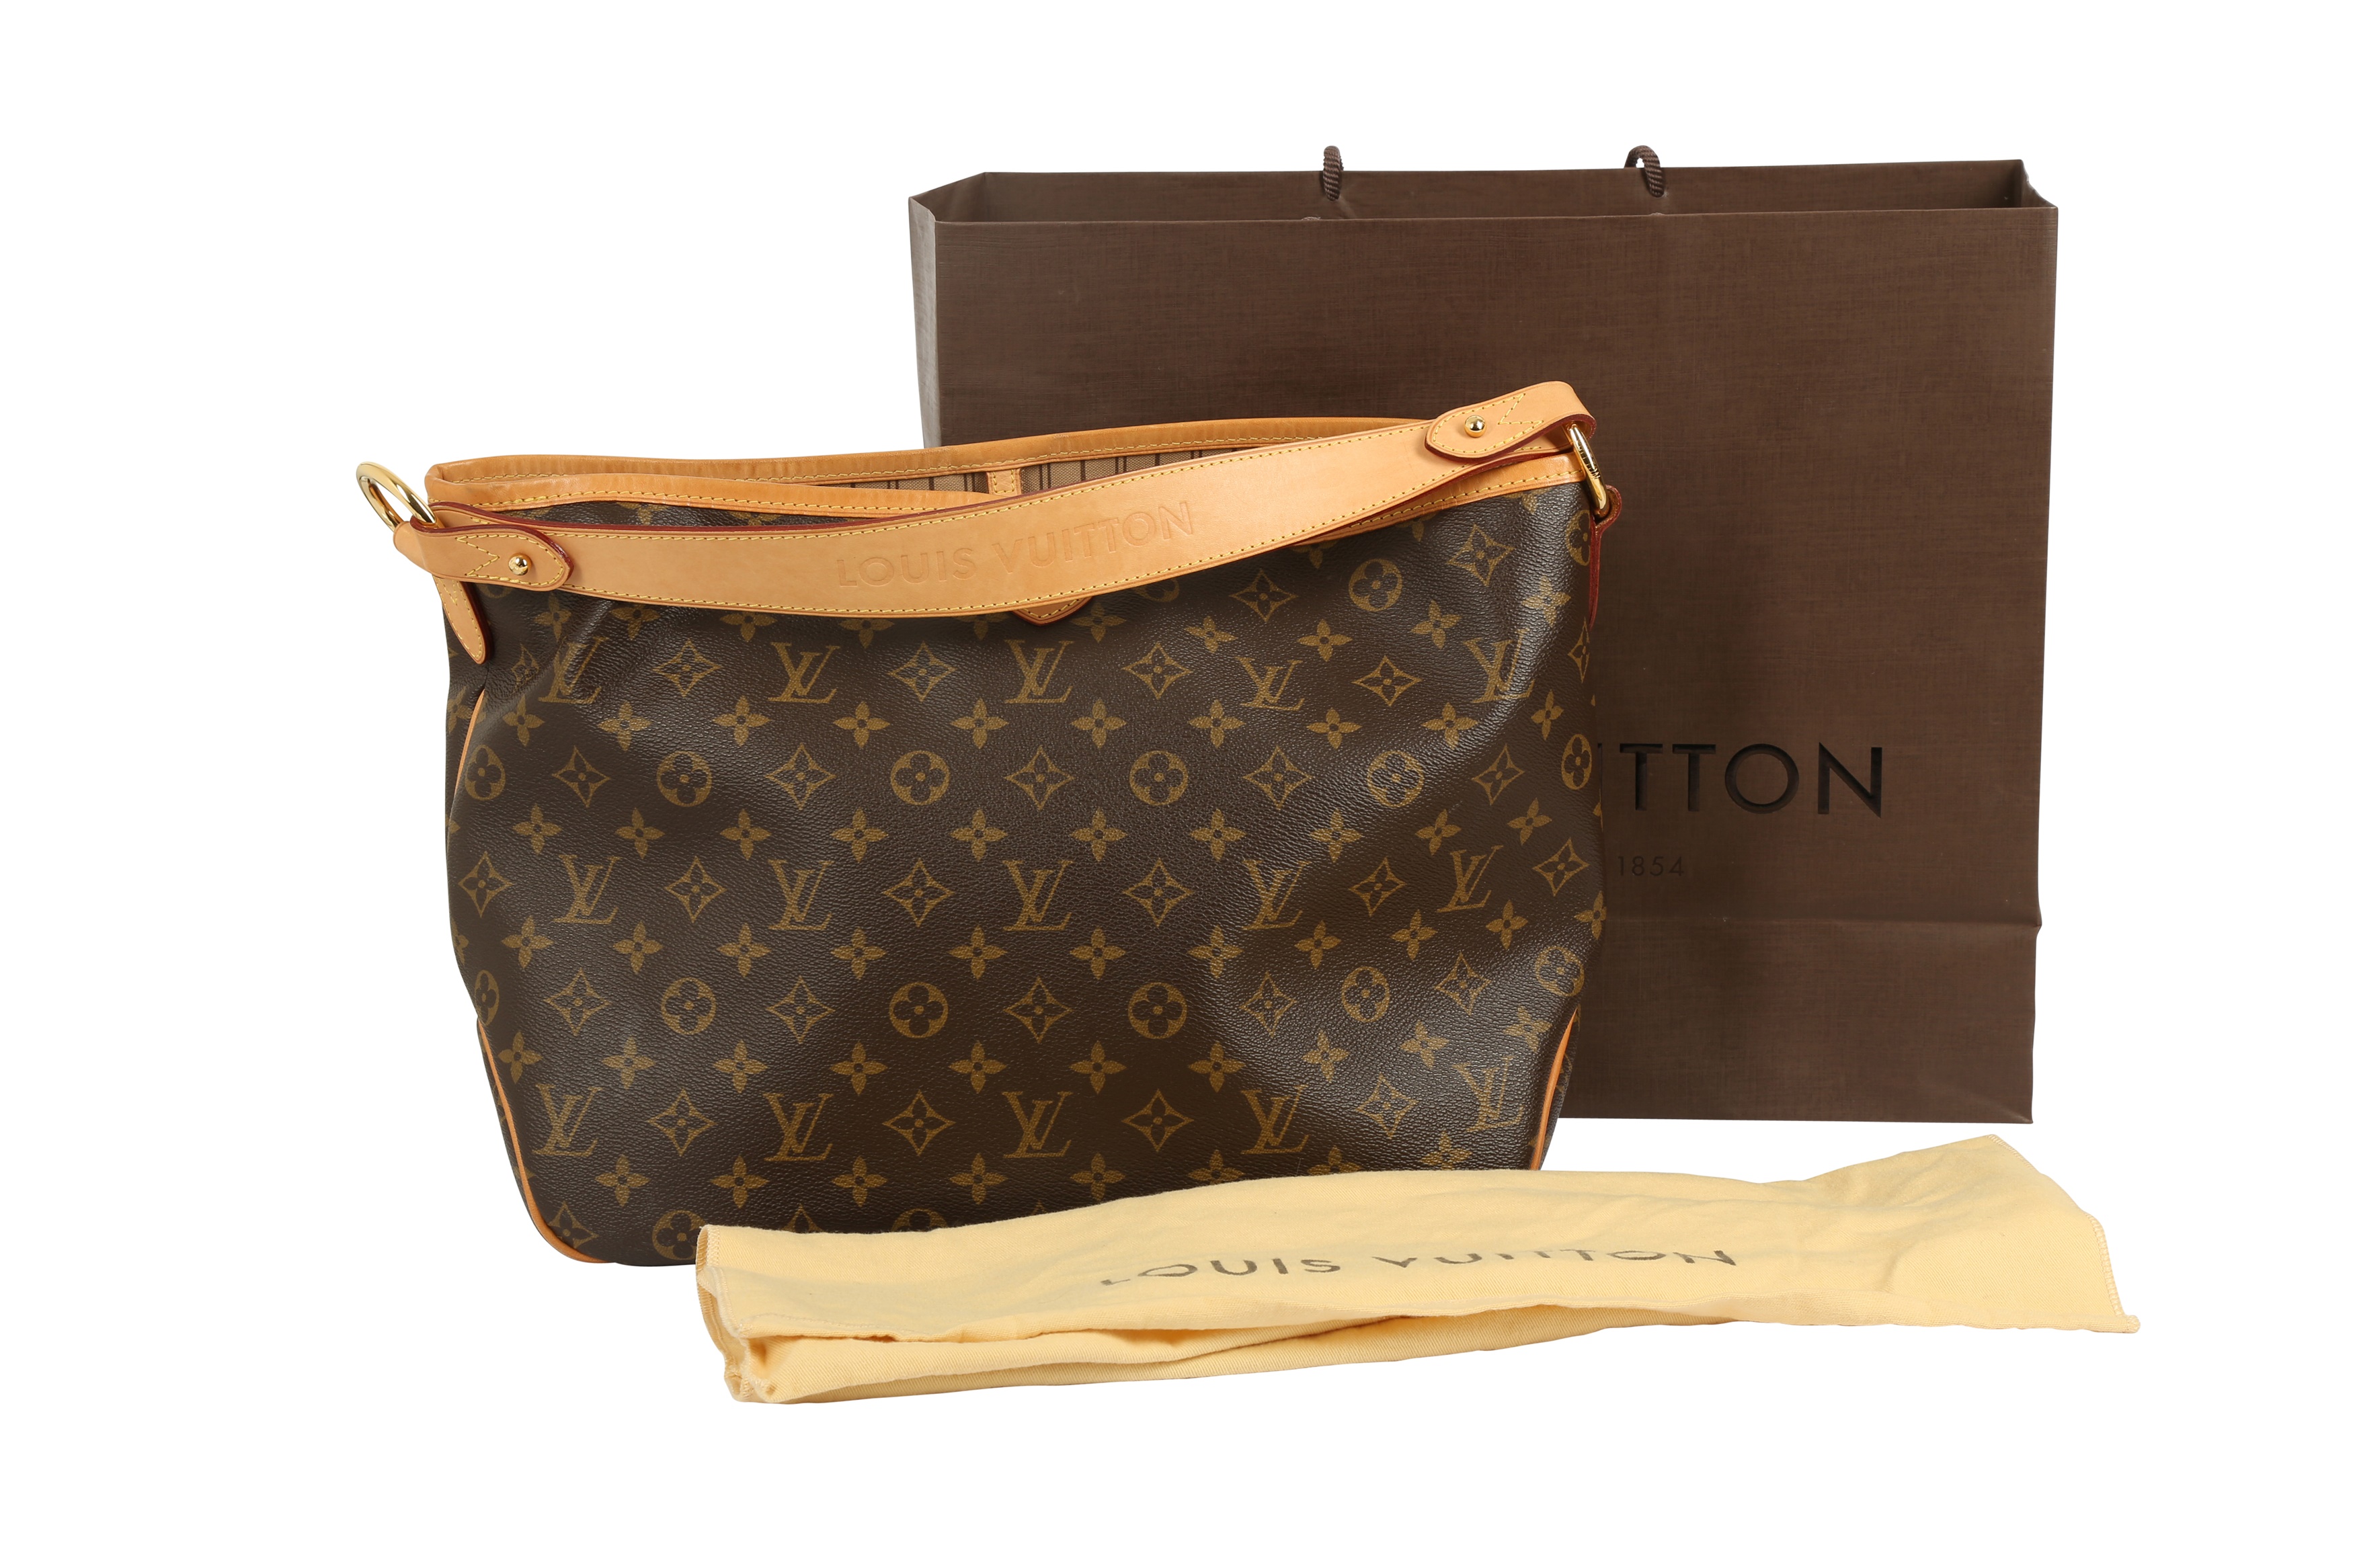 Sold at Auction: Louis Vuitton, Louis Vuitton Delightful GM Shoulder Bag